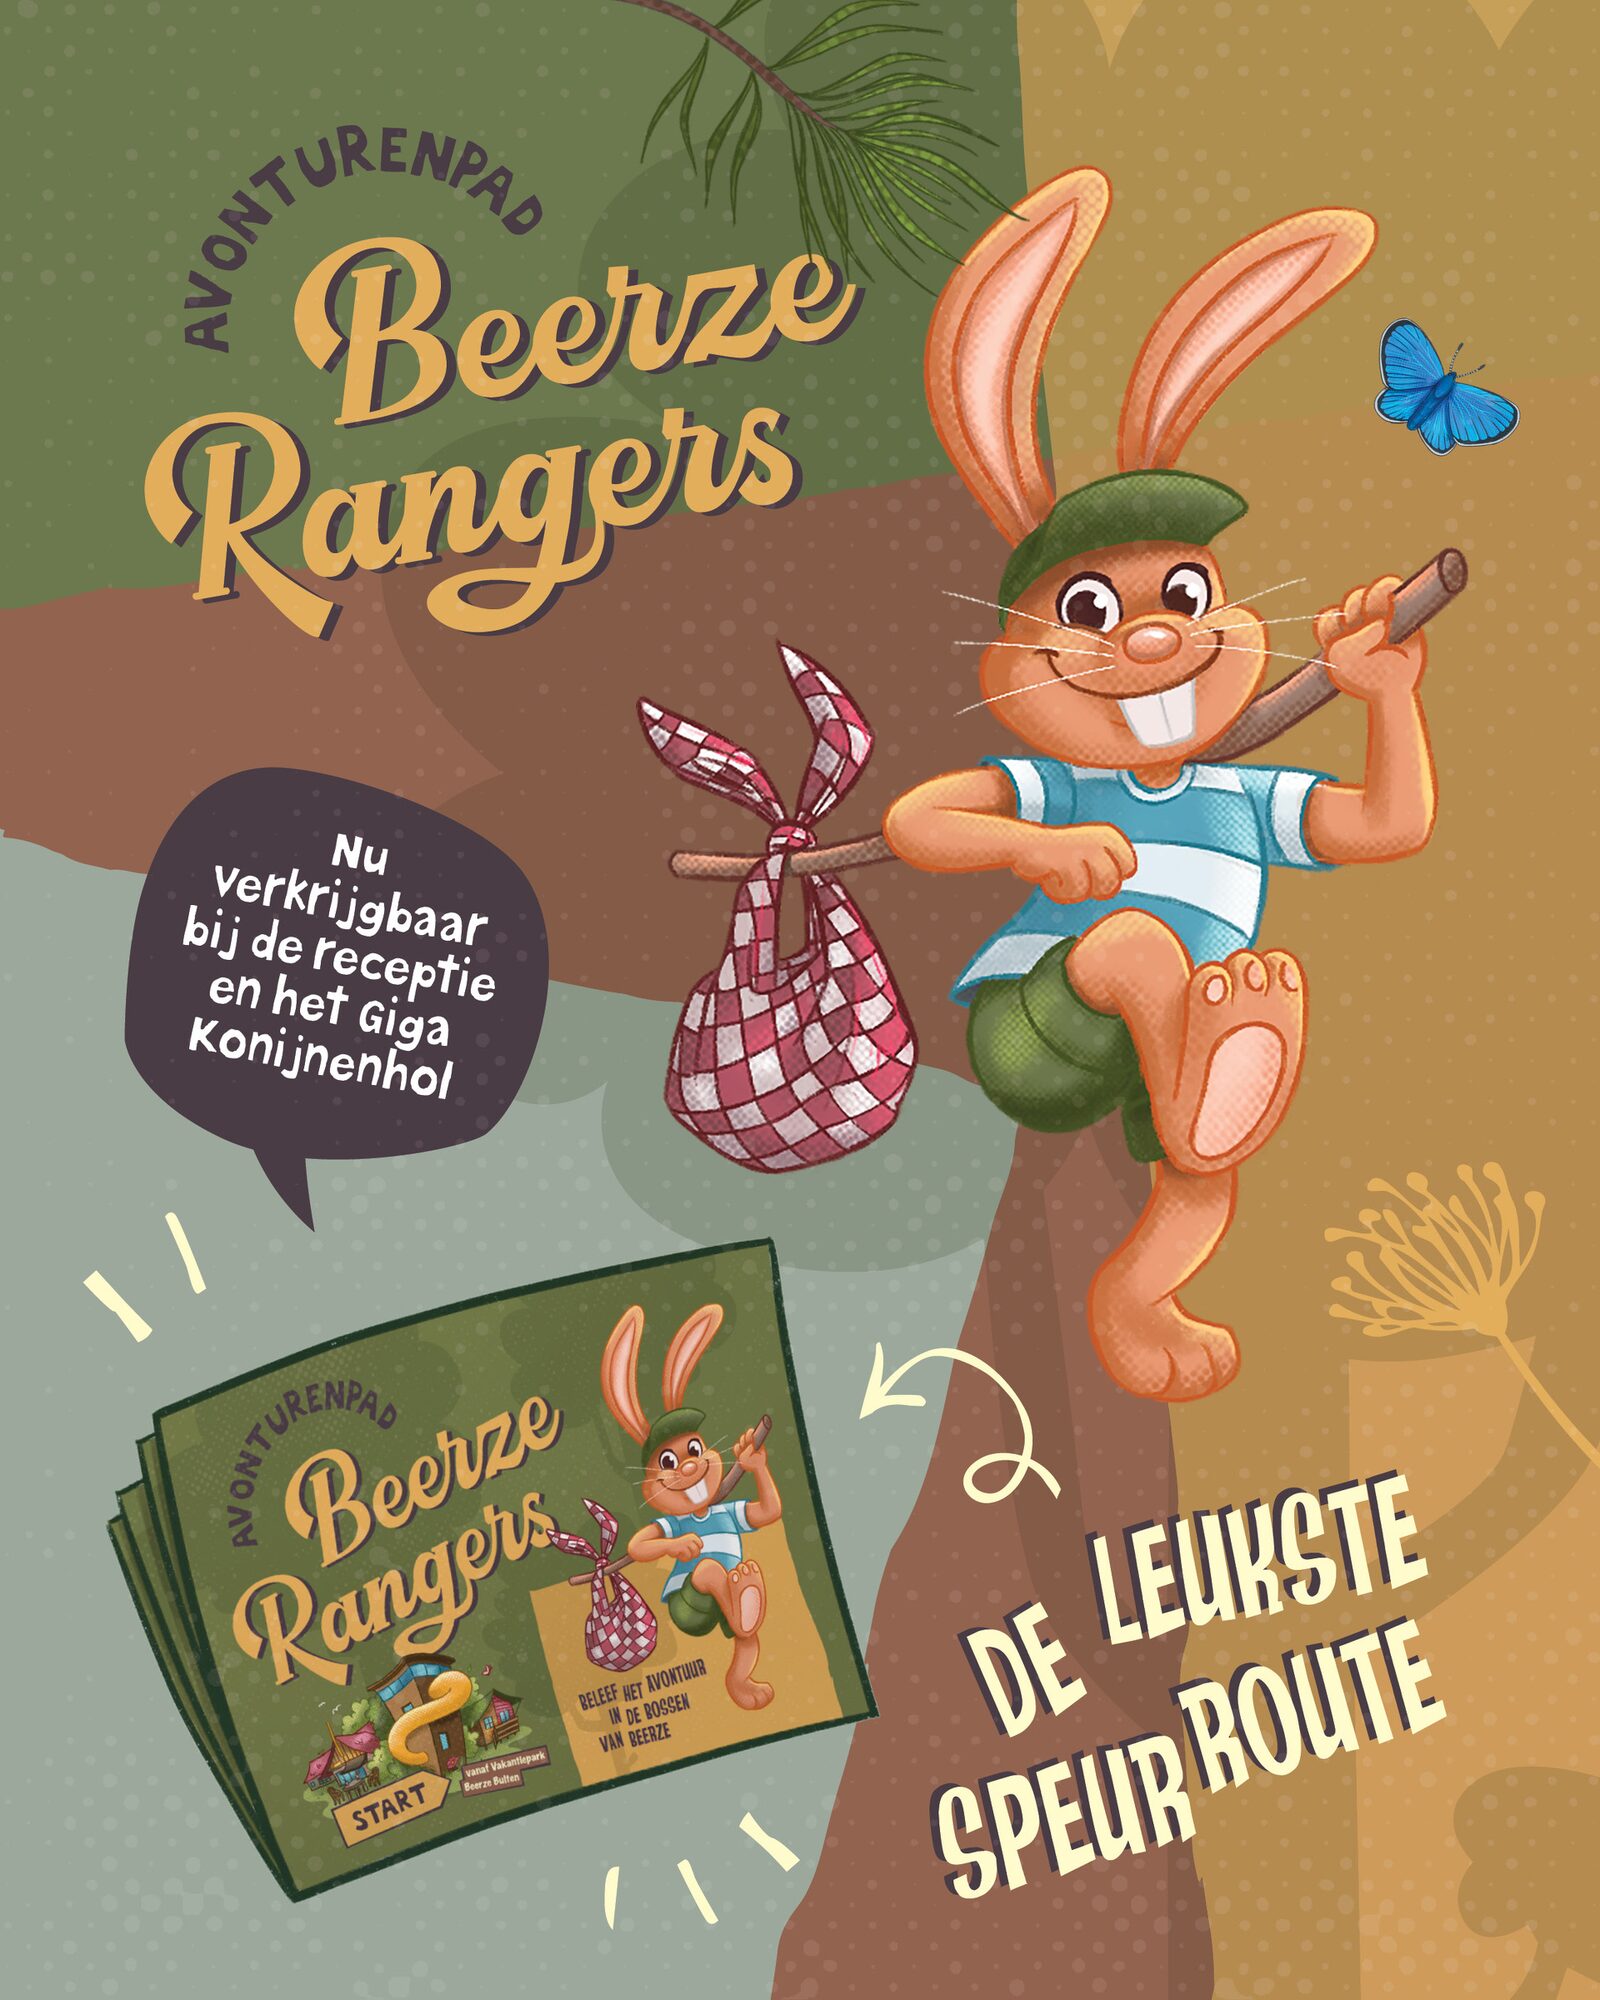 Beerze Rangers